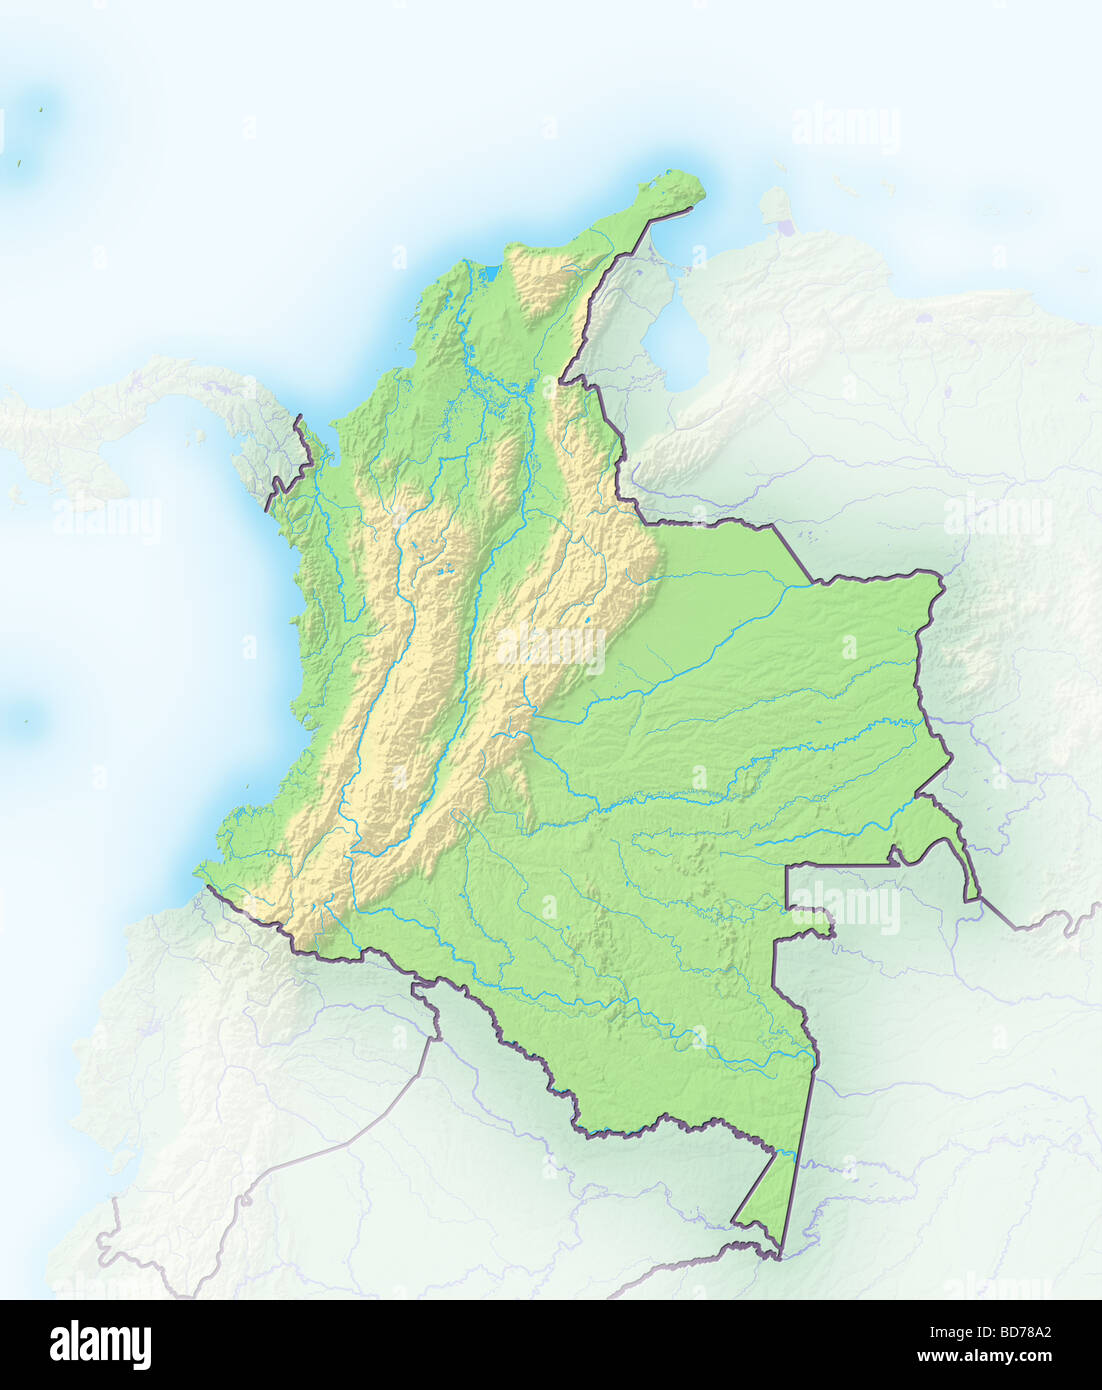 Colombia, Mapa en relieve sombreado Fotografía de stock - Alamy